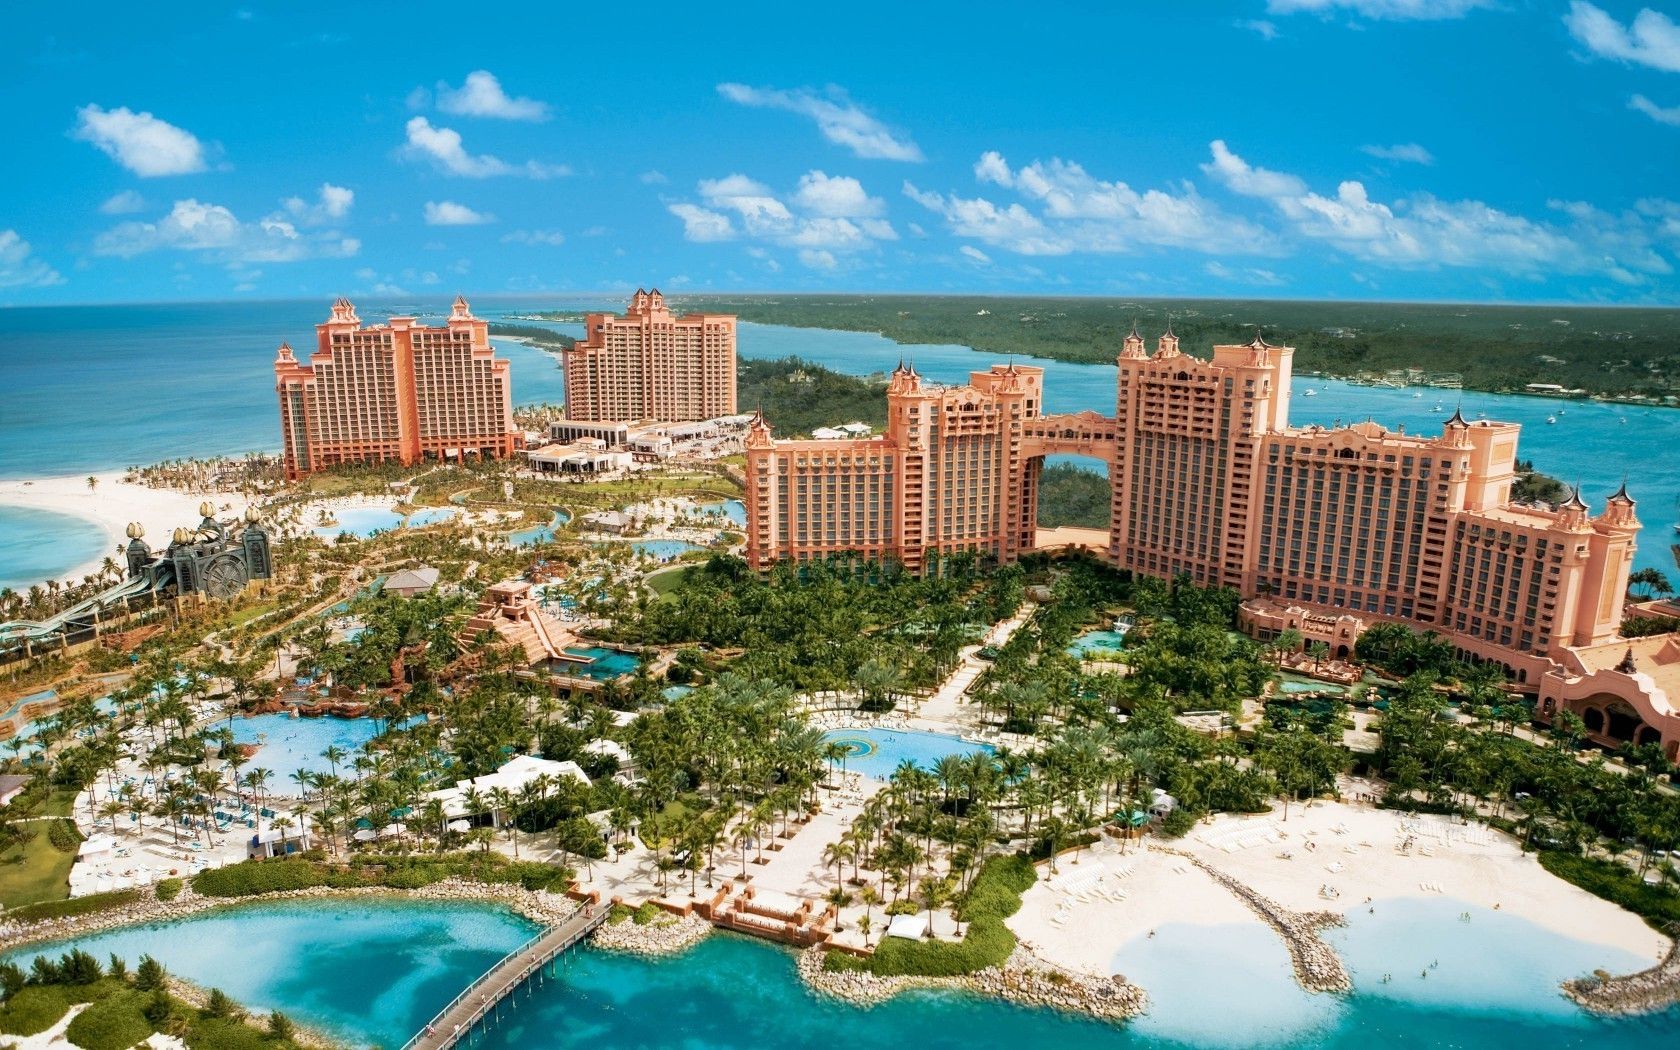 Atlantis Paradise Island in the Bahamas